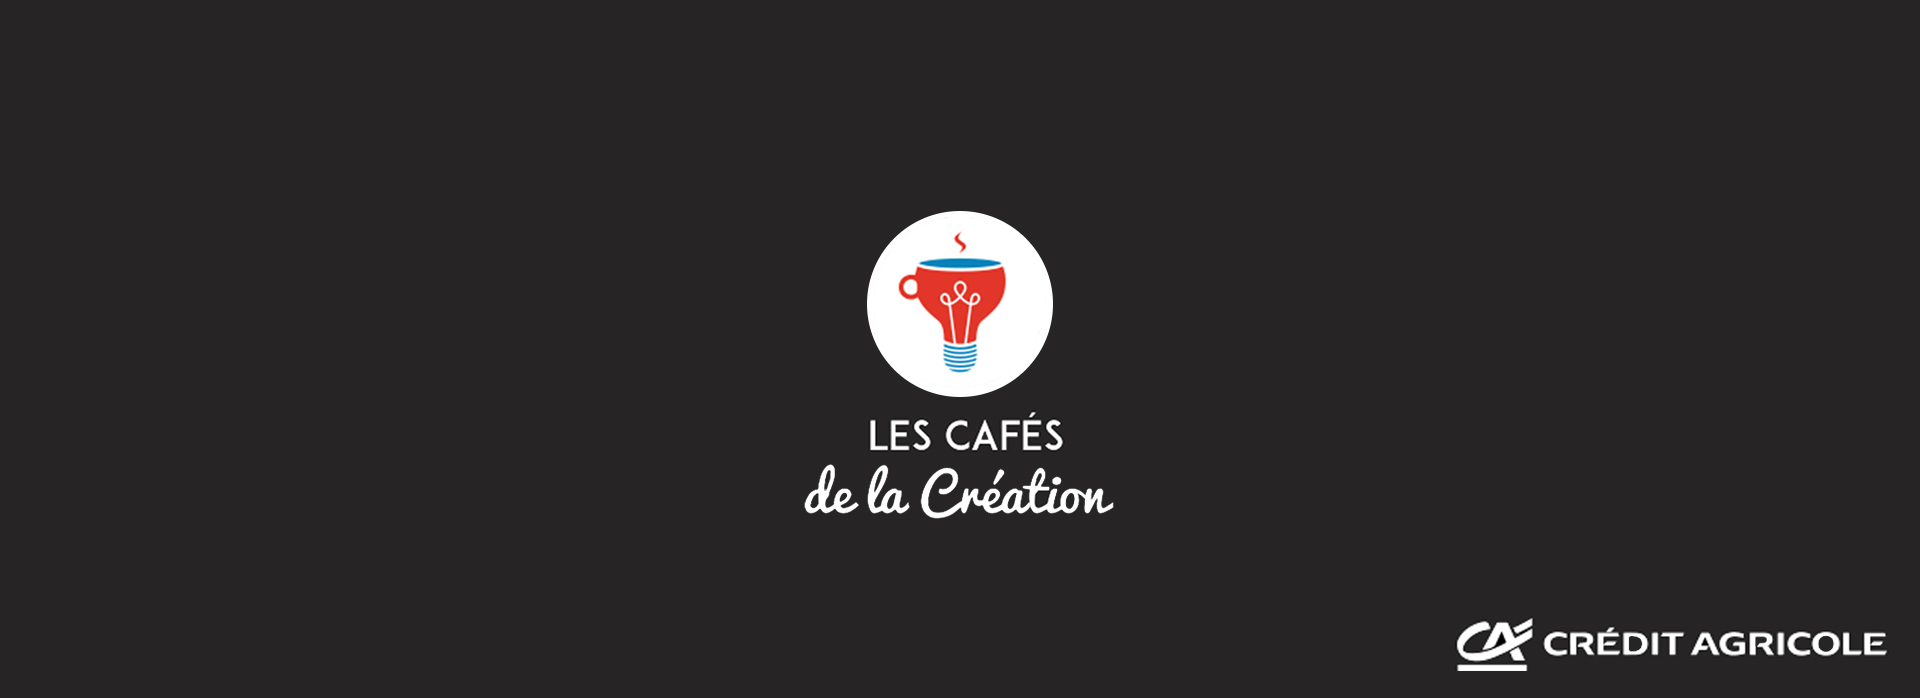 Cafés de la création by Crédit Agricole